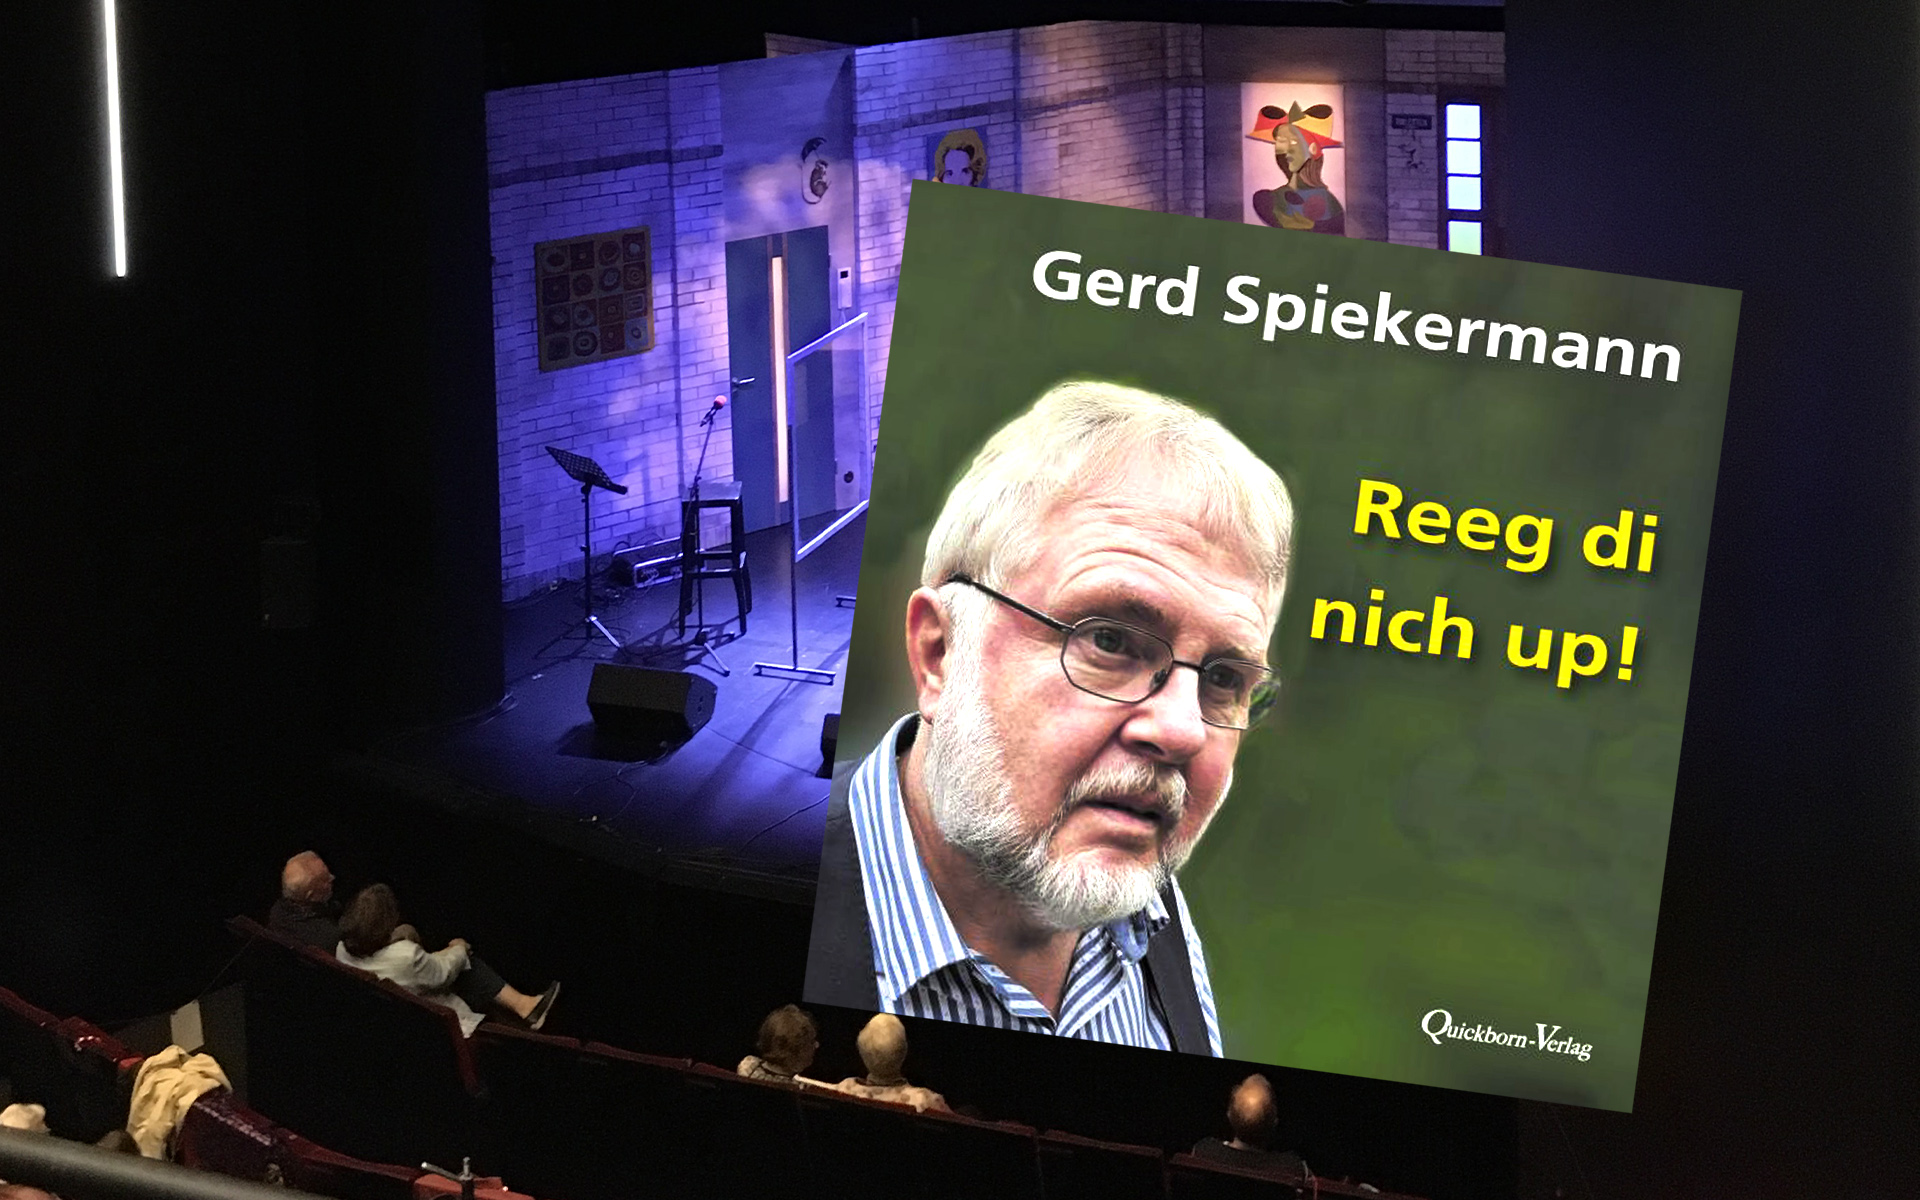 Das neue Hörbuch: Gerd Spiekermann endlich wieder live // Reeg di nich up!